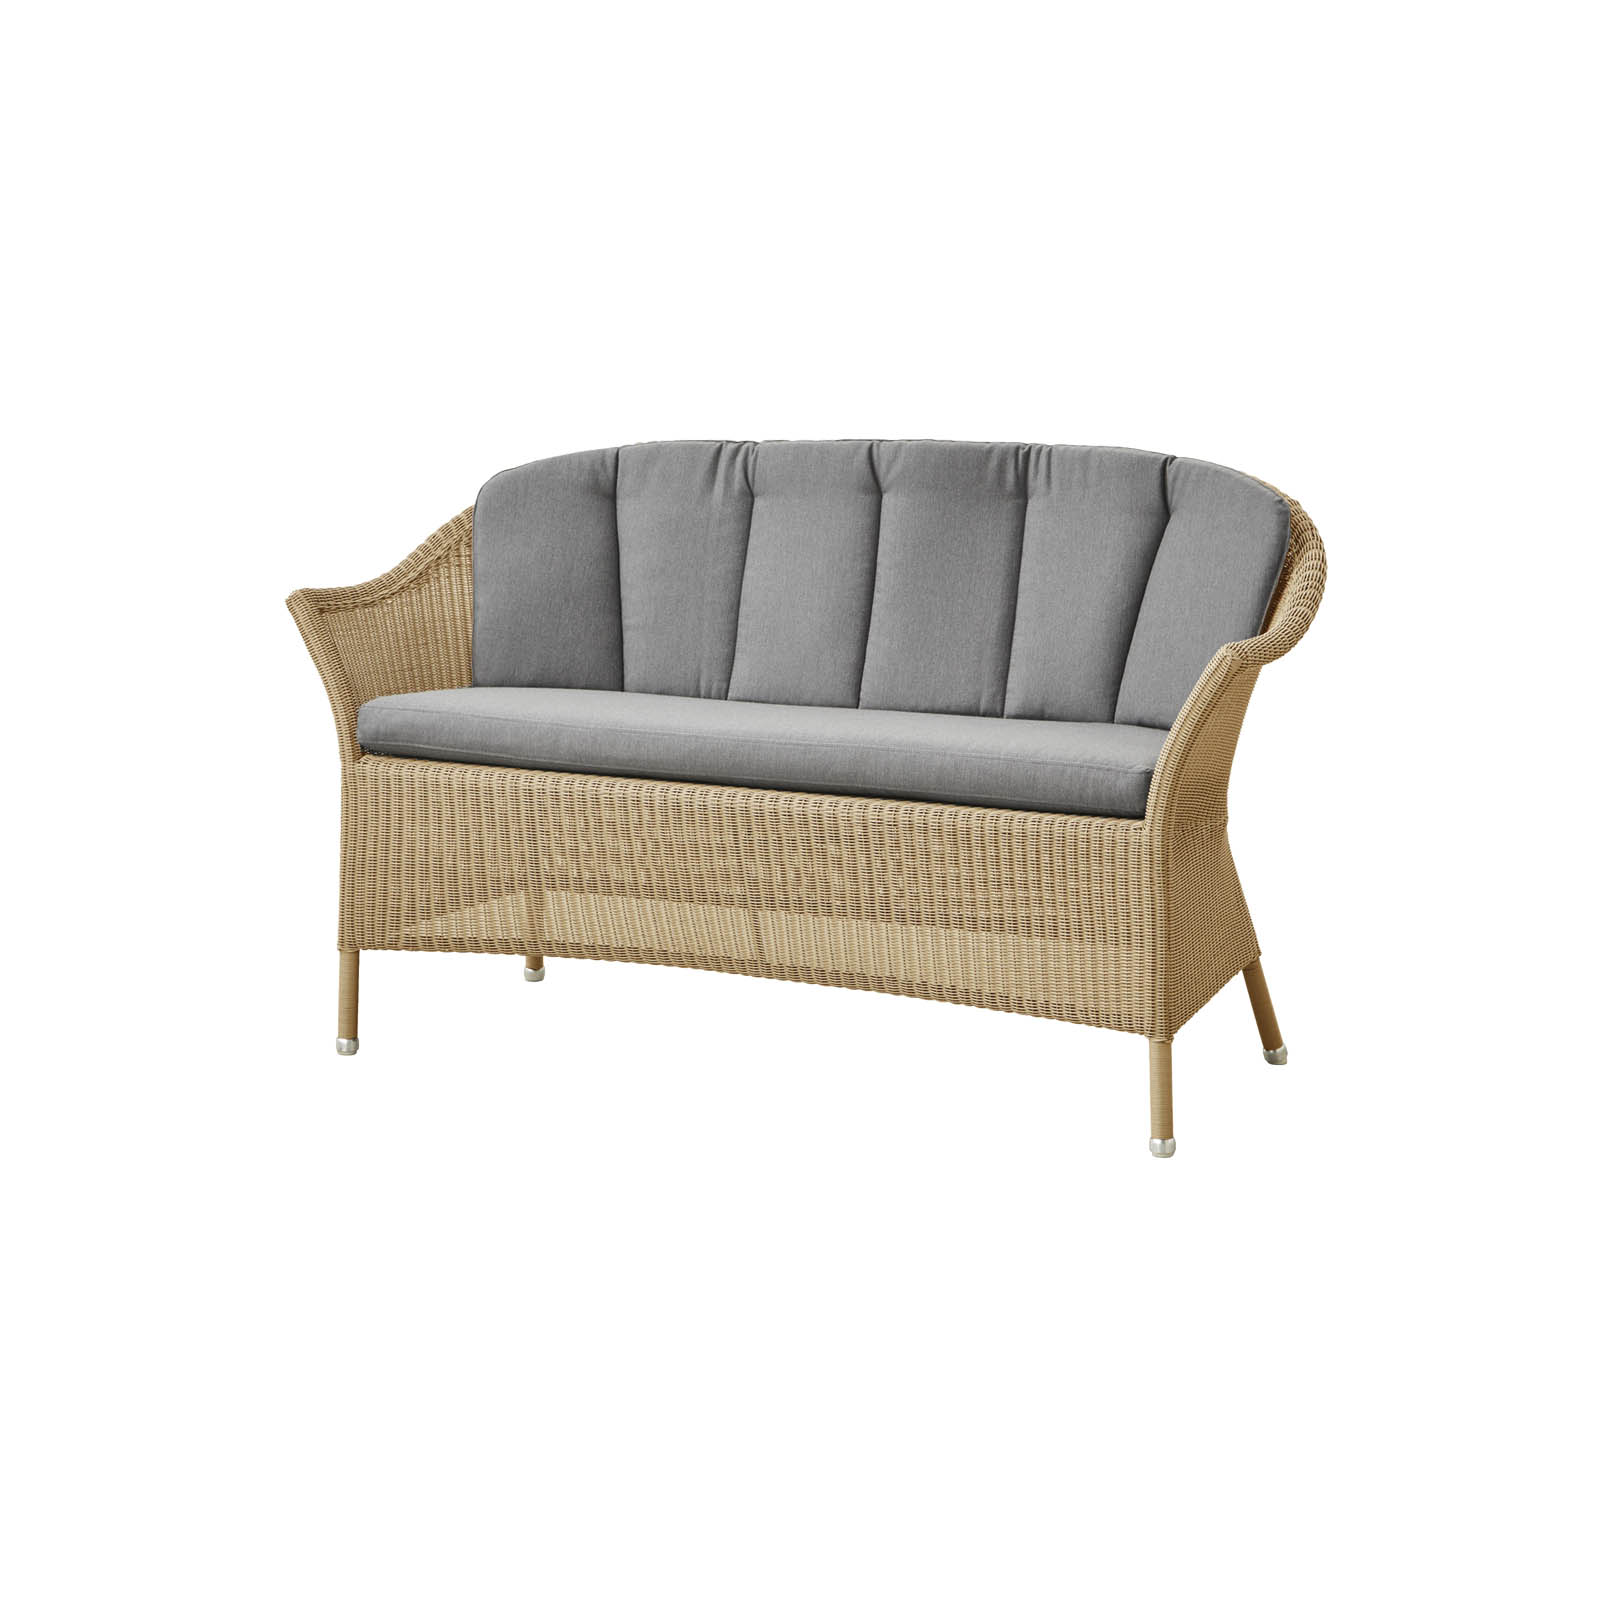 Lansing 2-Sitzer Sofa aus Cane-line Weave in Natural mit Kissen aus Cane-line Natté in Grey